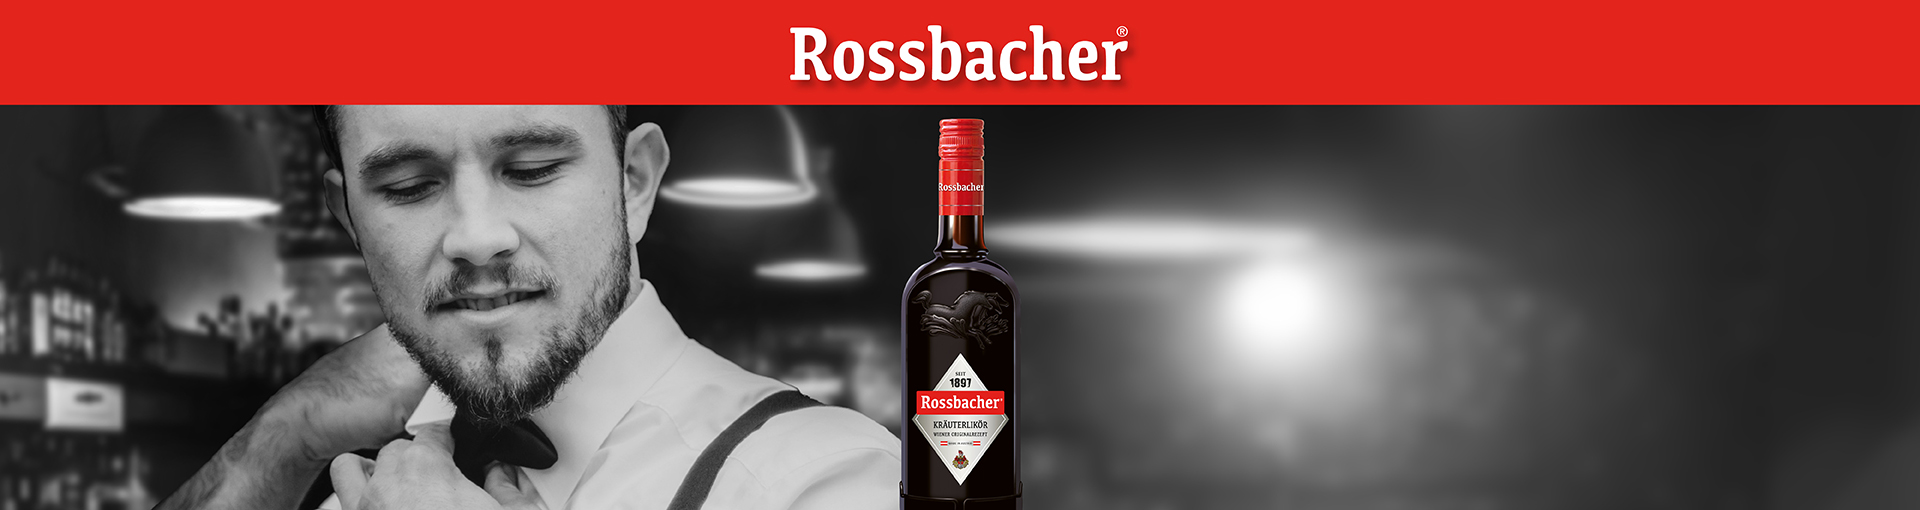 Rossbacher Header Neu mit Barkeeper und Rossbacher Flasche